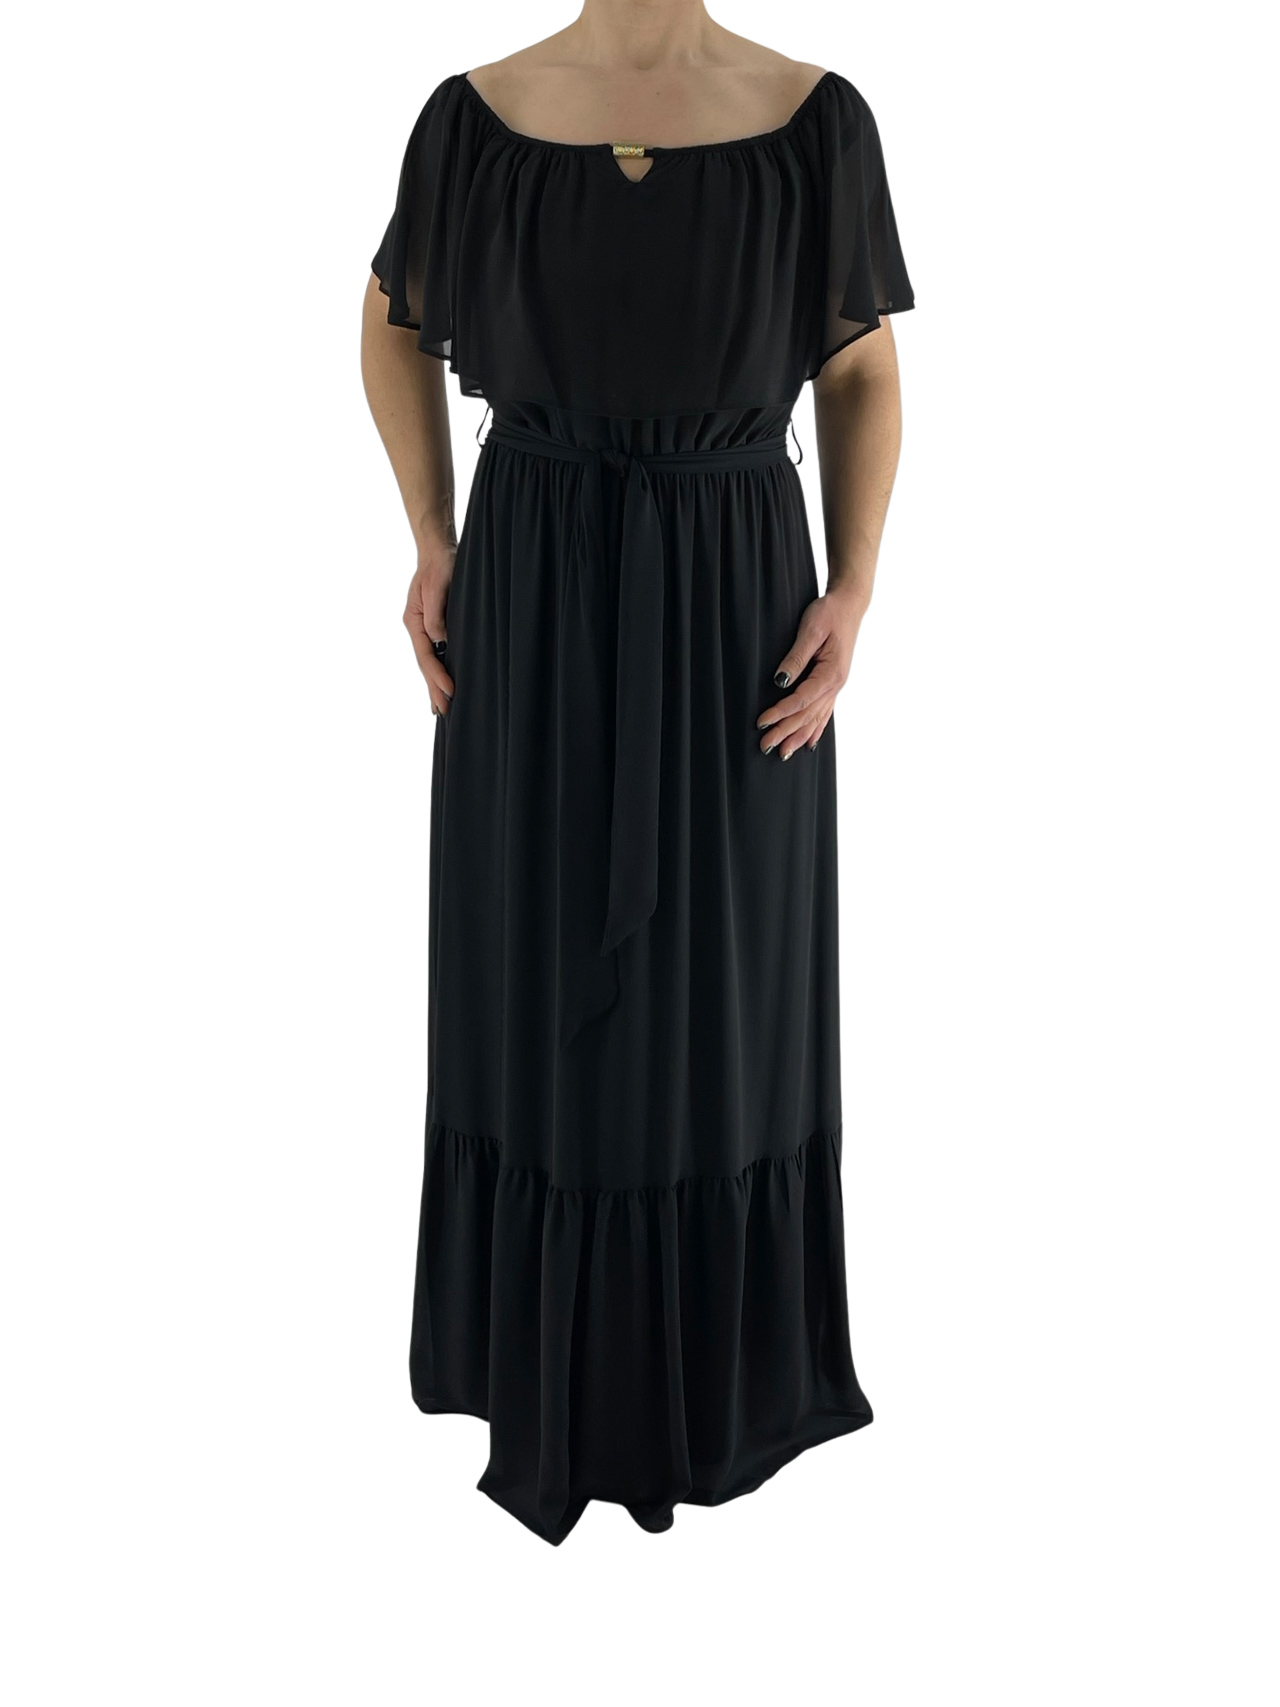 Φόρεμα maxi μαύρο κωδ. 9379